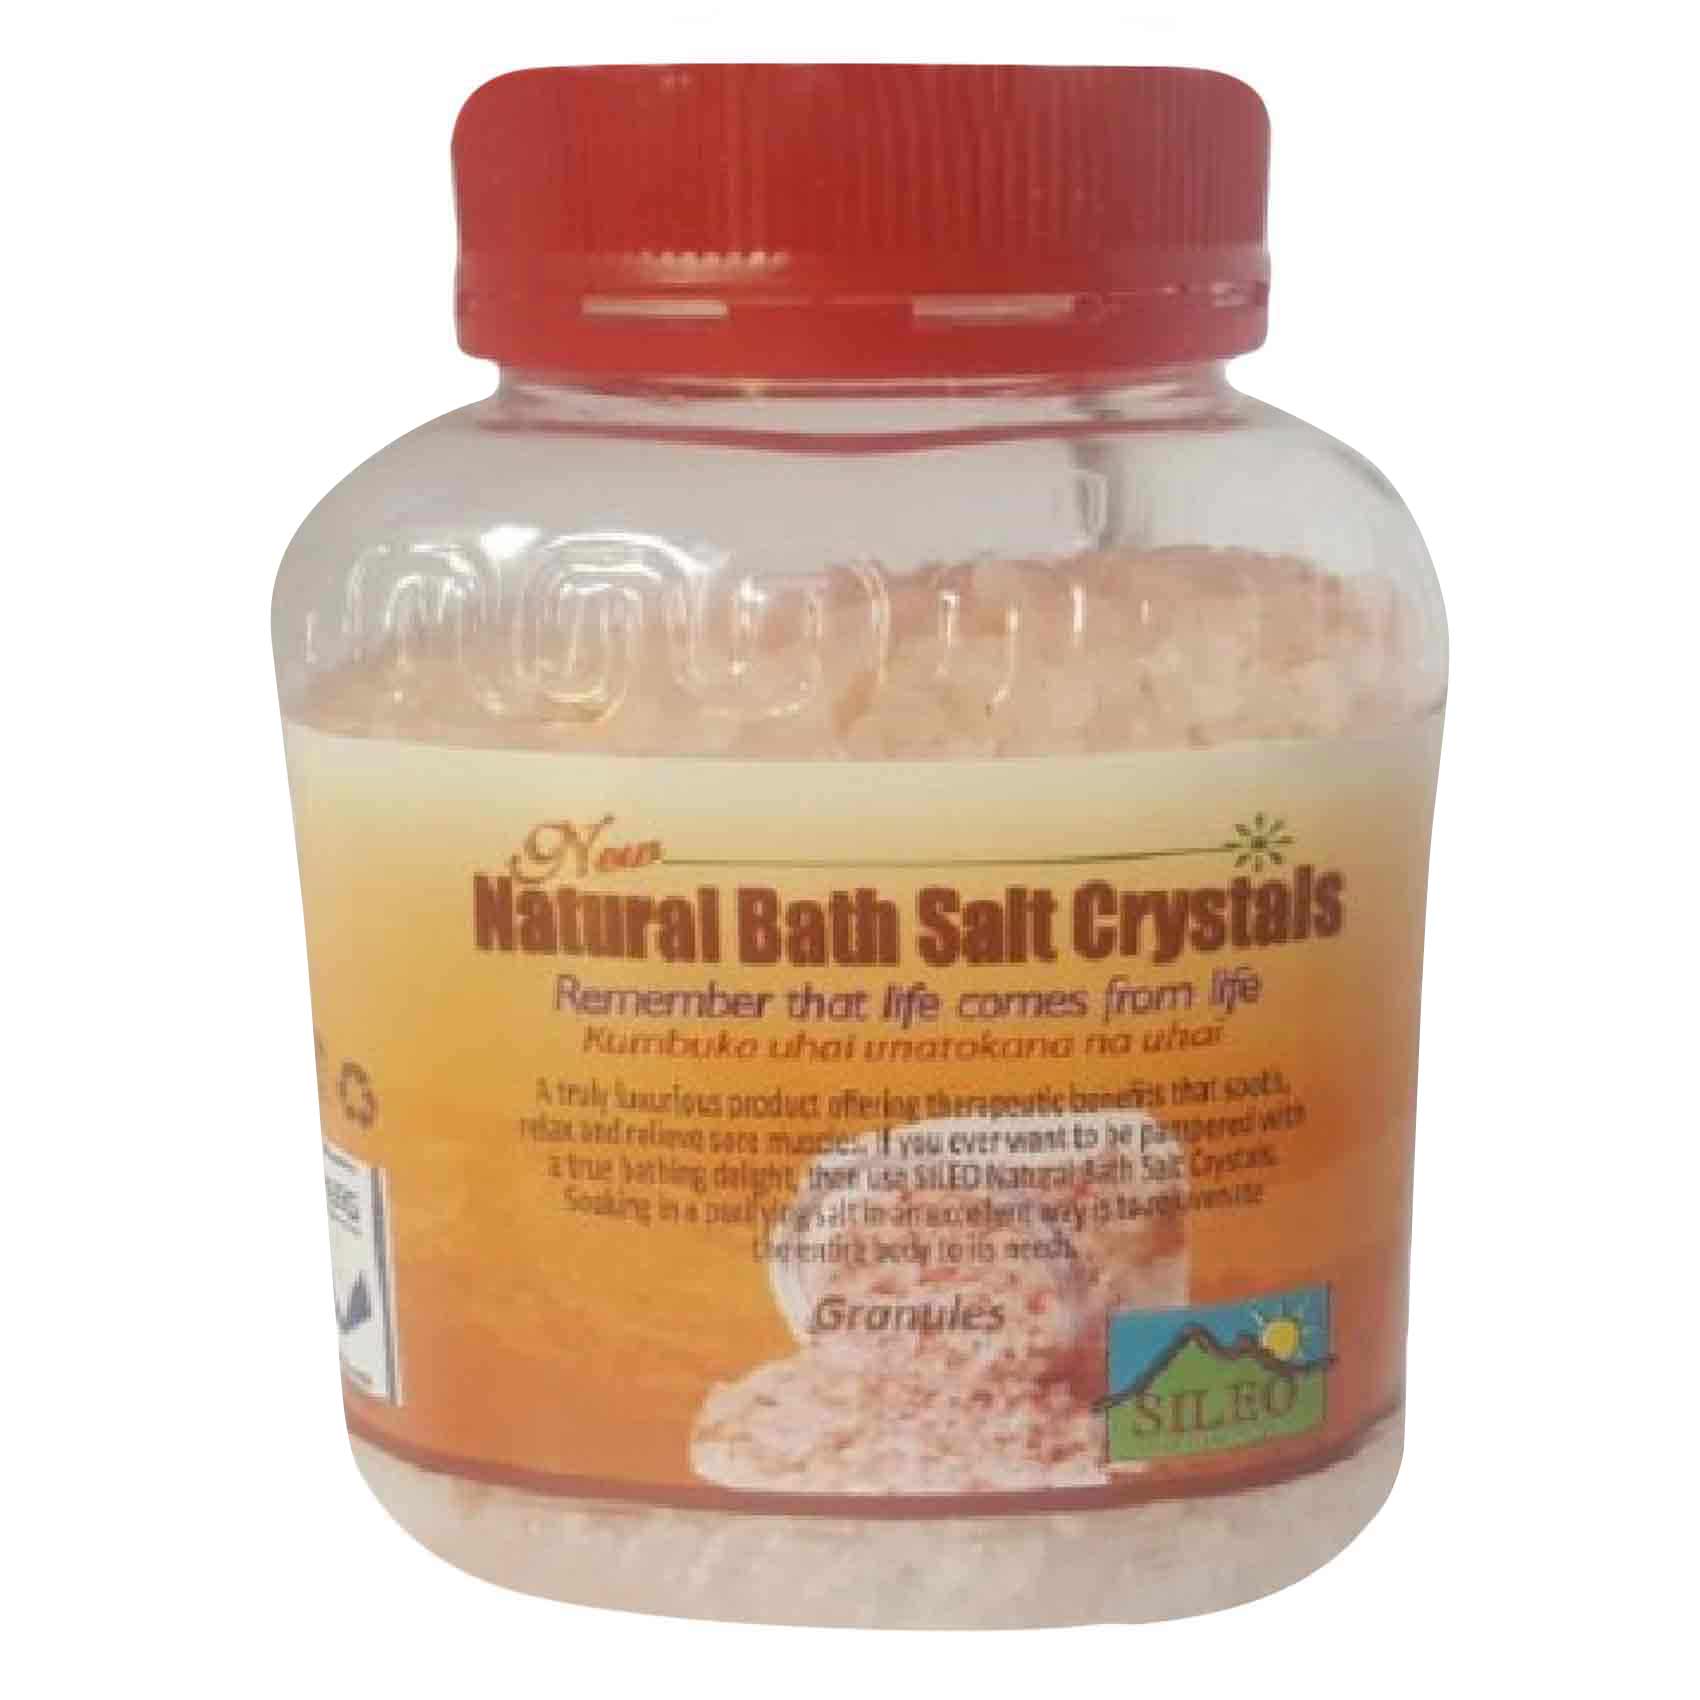 Sileo Natural Bath Crystal Salt 500g